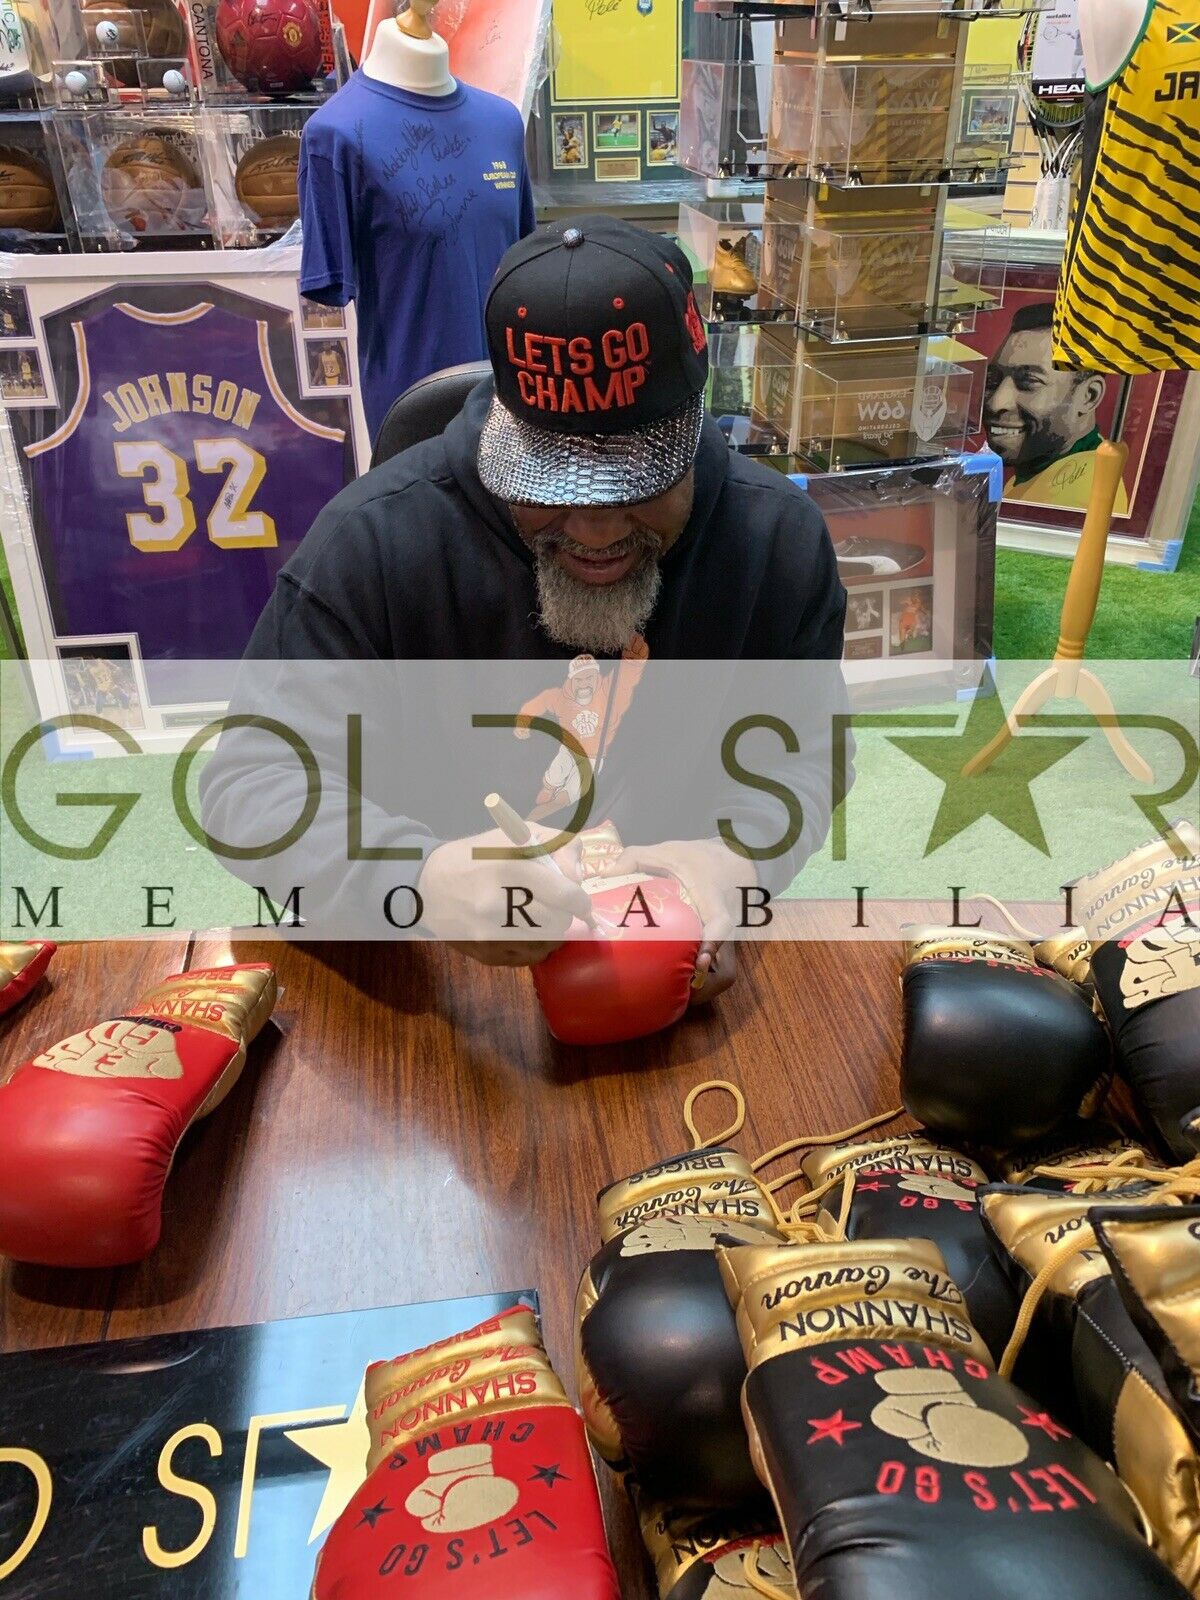 Shannon Briggs Signed Boxing Glove Lets Go Champ | Gold Star Memorabilia